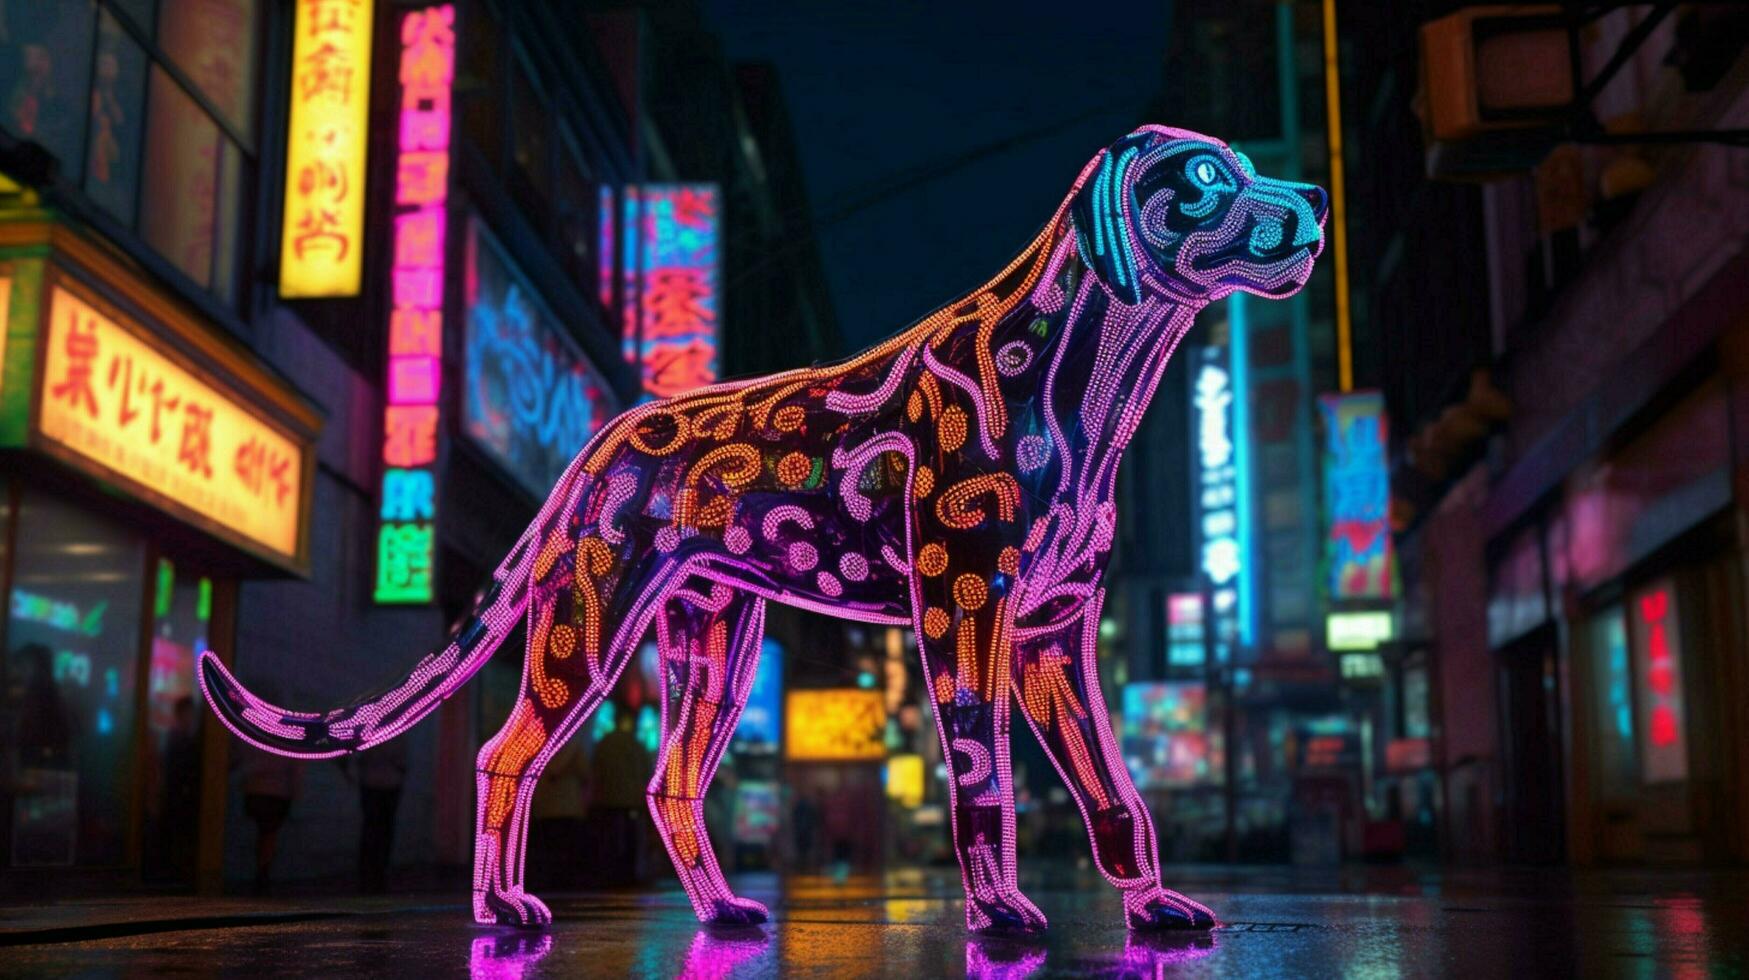 une néon léopard chien dans une ville photo